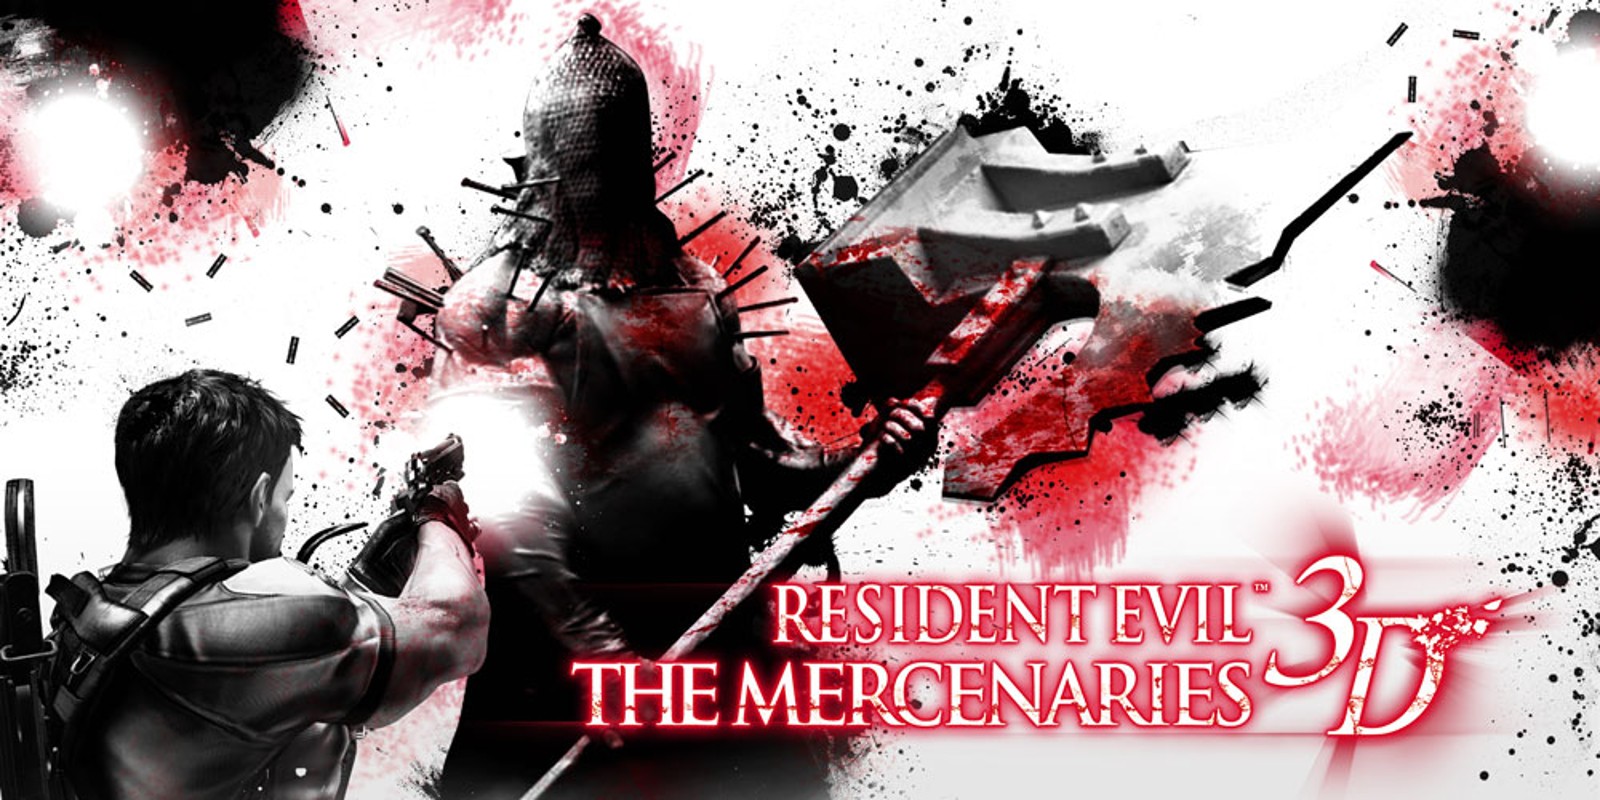 18. Resident Evil: The Mercenaries 3D